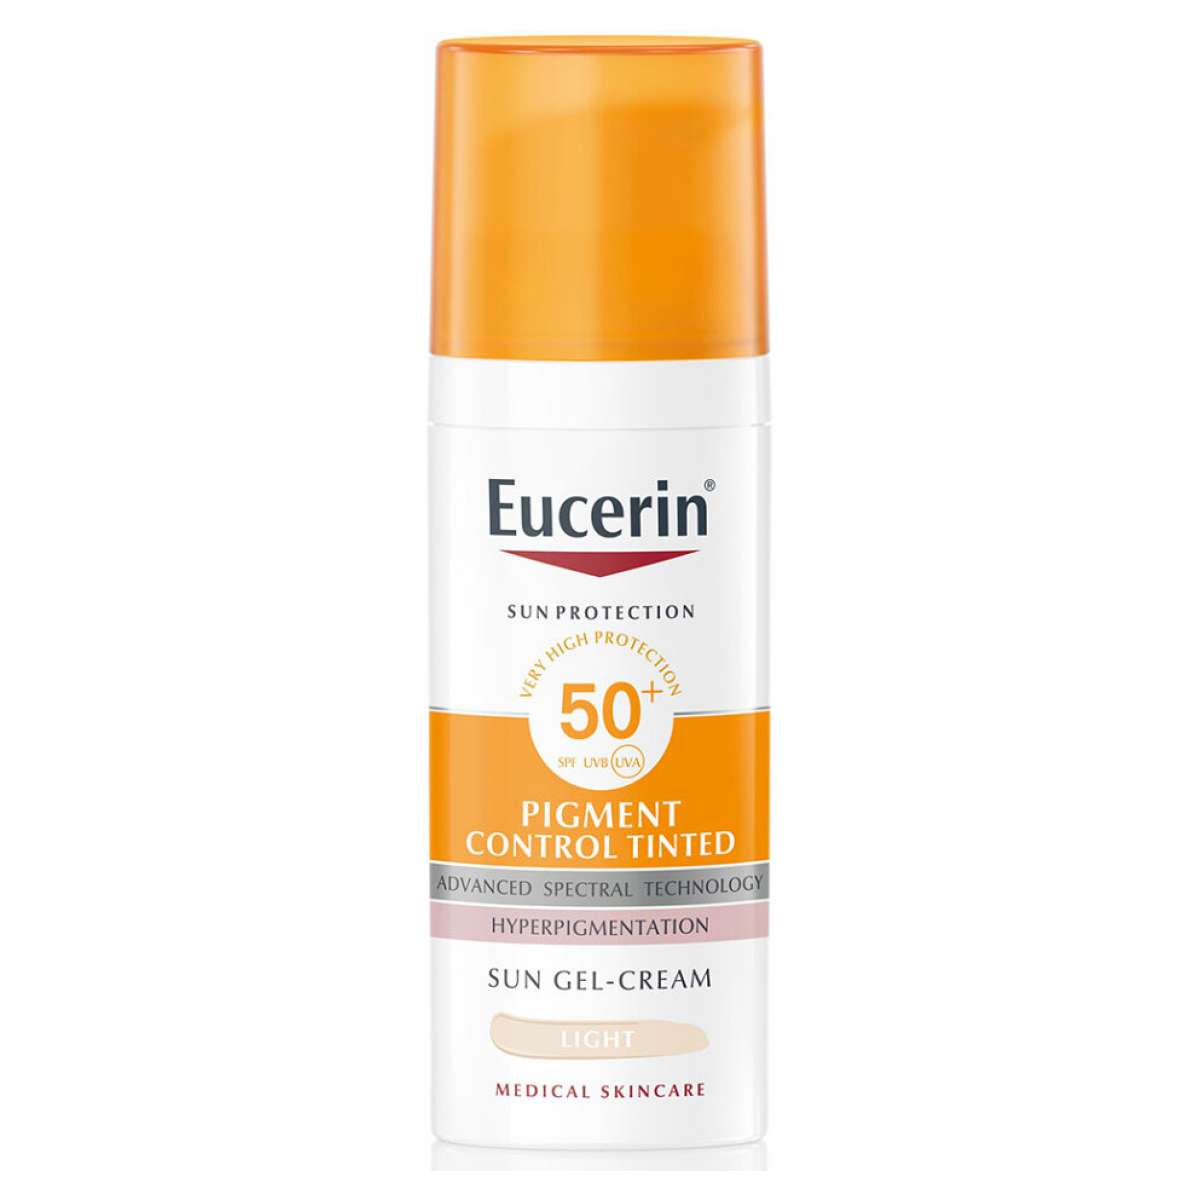 Eucerin Ochranný tónovací gelový krém na obličej SPF 50+ Pigment Control Tinted (Sun Gel-Cream) 50 ml Light